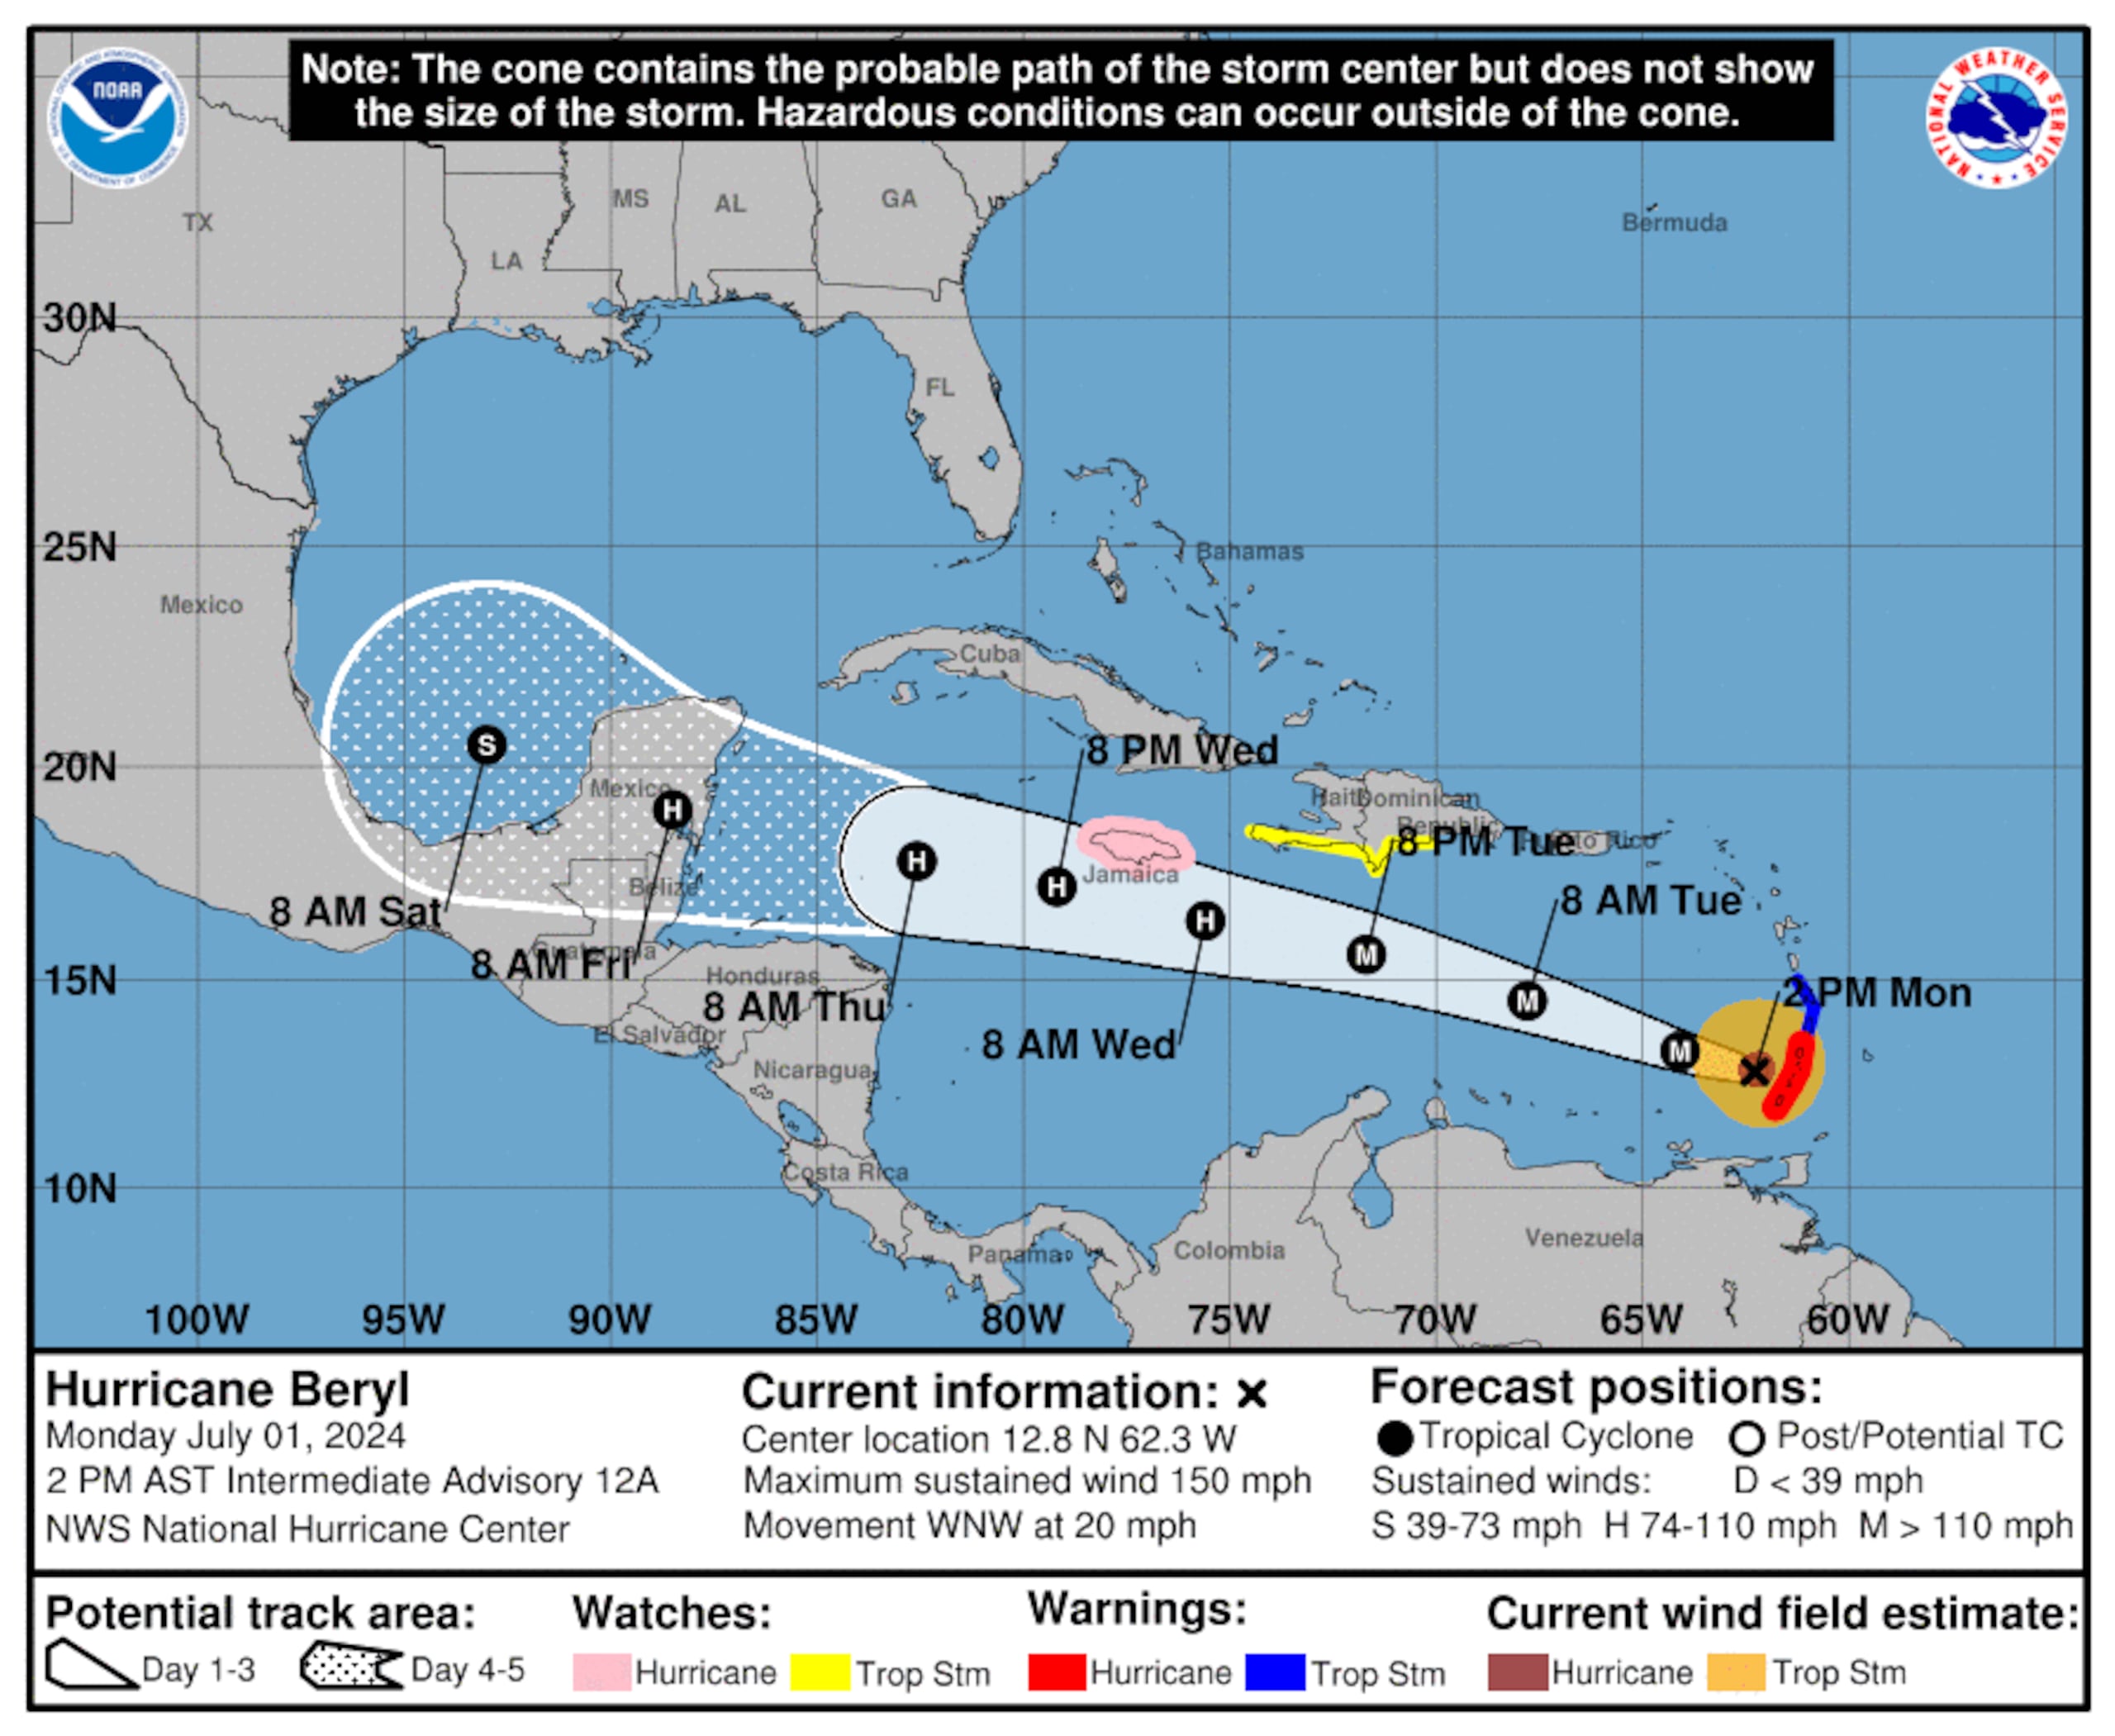 El huracán Beryl continuará su paso por las Antillas Menores hacia el oeste hasta llegar al Mar Caribe donde se espera disminuya su potencia, aunque continuaría como un huracán.